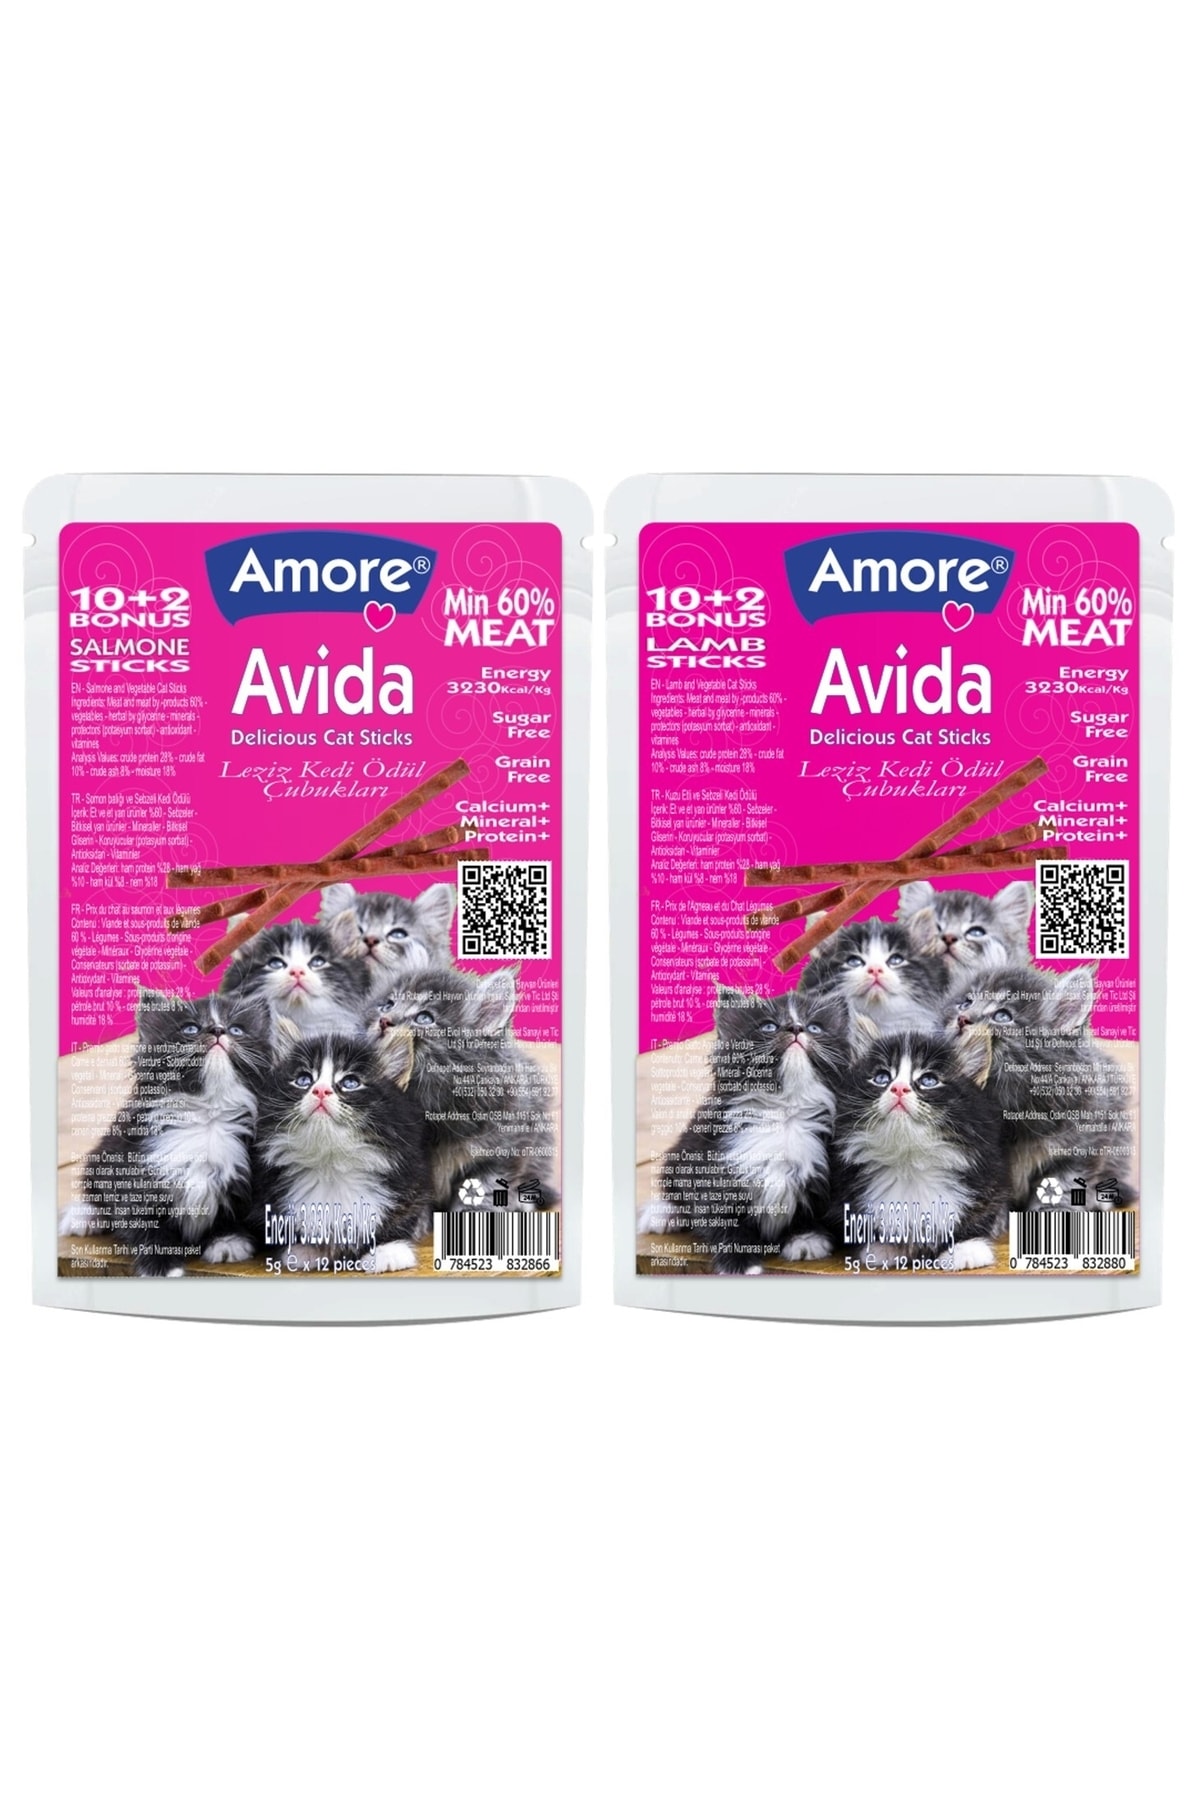 Amorecat Avida Salmone-12 Ve Lamb-12 Cat Sticks Balikli Ve Kuzulu Tahilsiz Kedi Odul Cubuklari